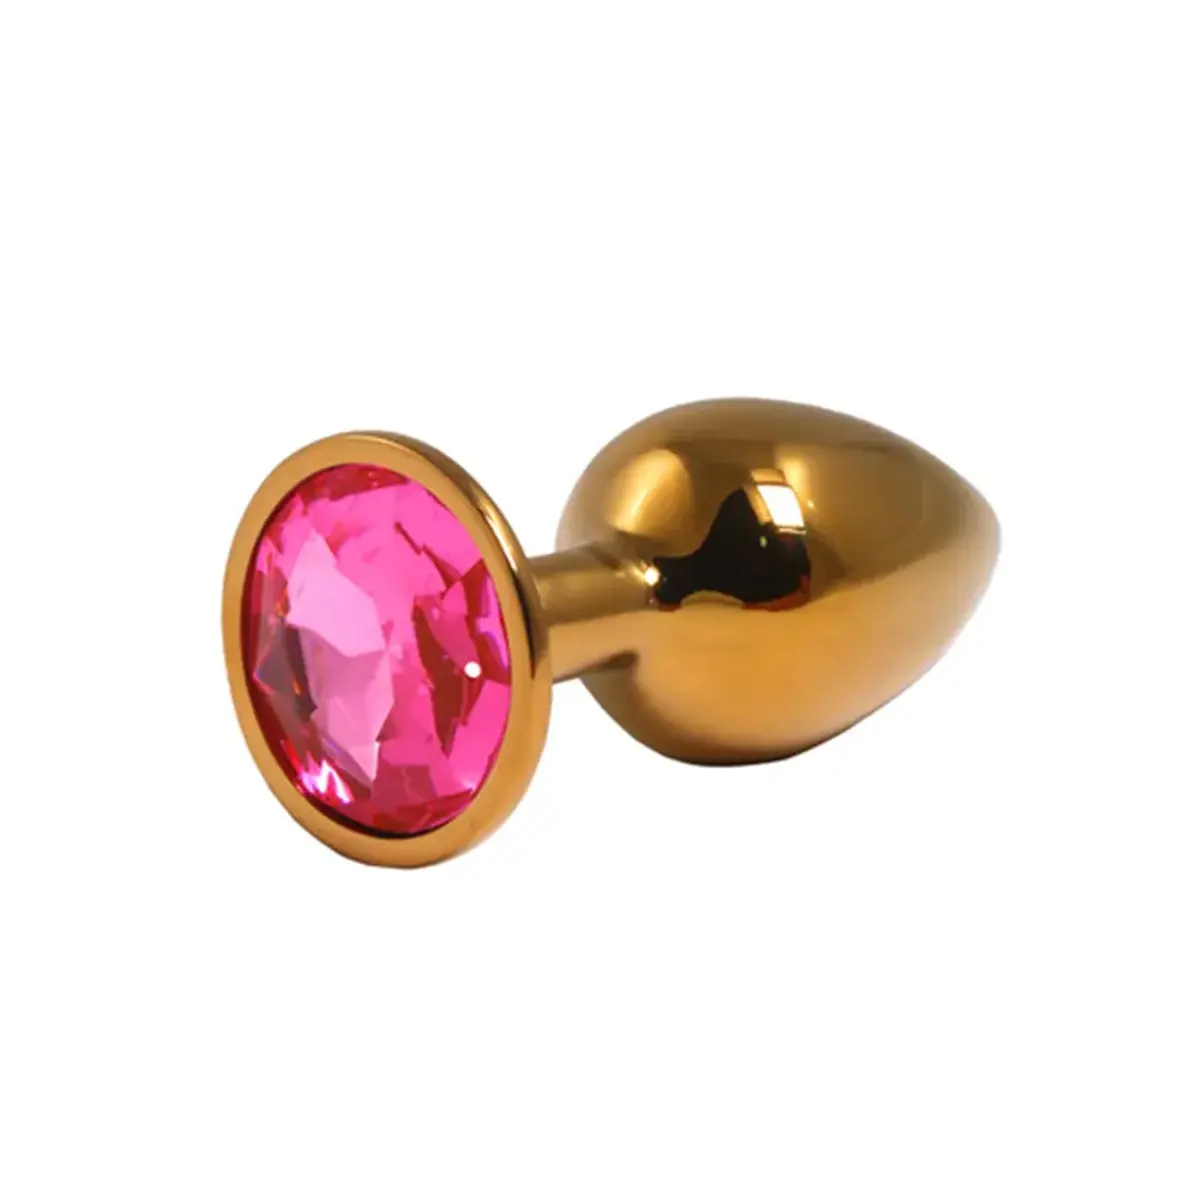 Mali zlatni analni dildo sa roze dijamantom